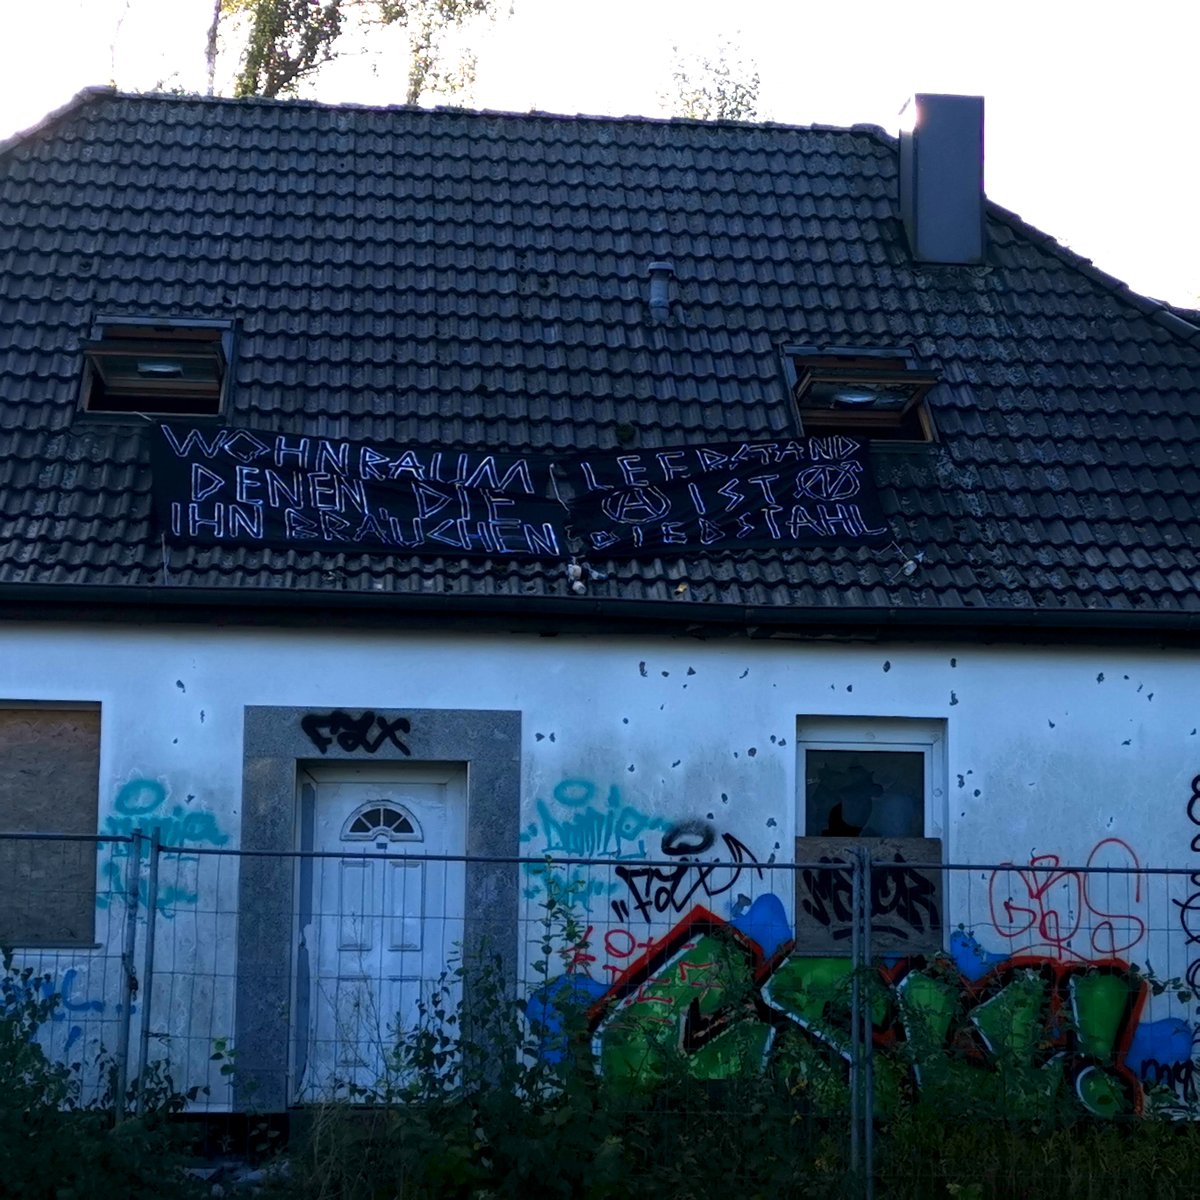 Heute wurde in #Lübeck erneut ein Haus in Solidarität mit #Liebig34bleibt besetzt! Diesmal in der Willy-Brandt-Allee 18. Reißt ihr unsere Häuser nieder, sehen wir uns in euren wieder! #Liebig34 lebt & kämpft! #besetzen #Liebig34Verteidigen
aghl.noblogs.org/wp-admin/post.…